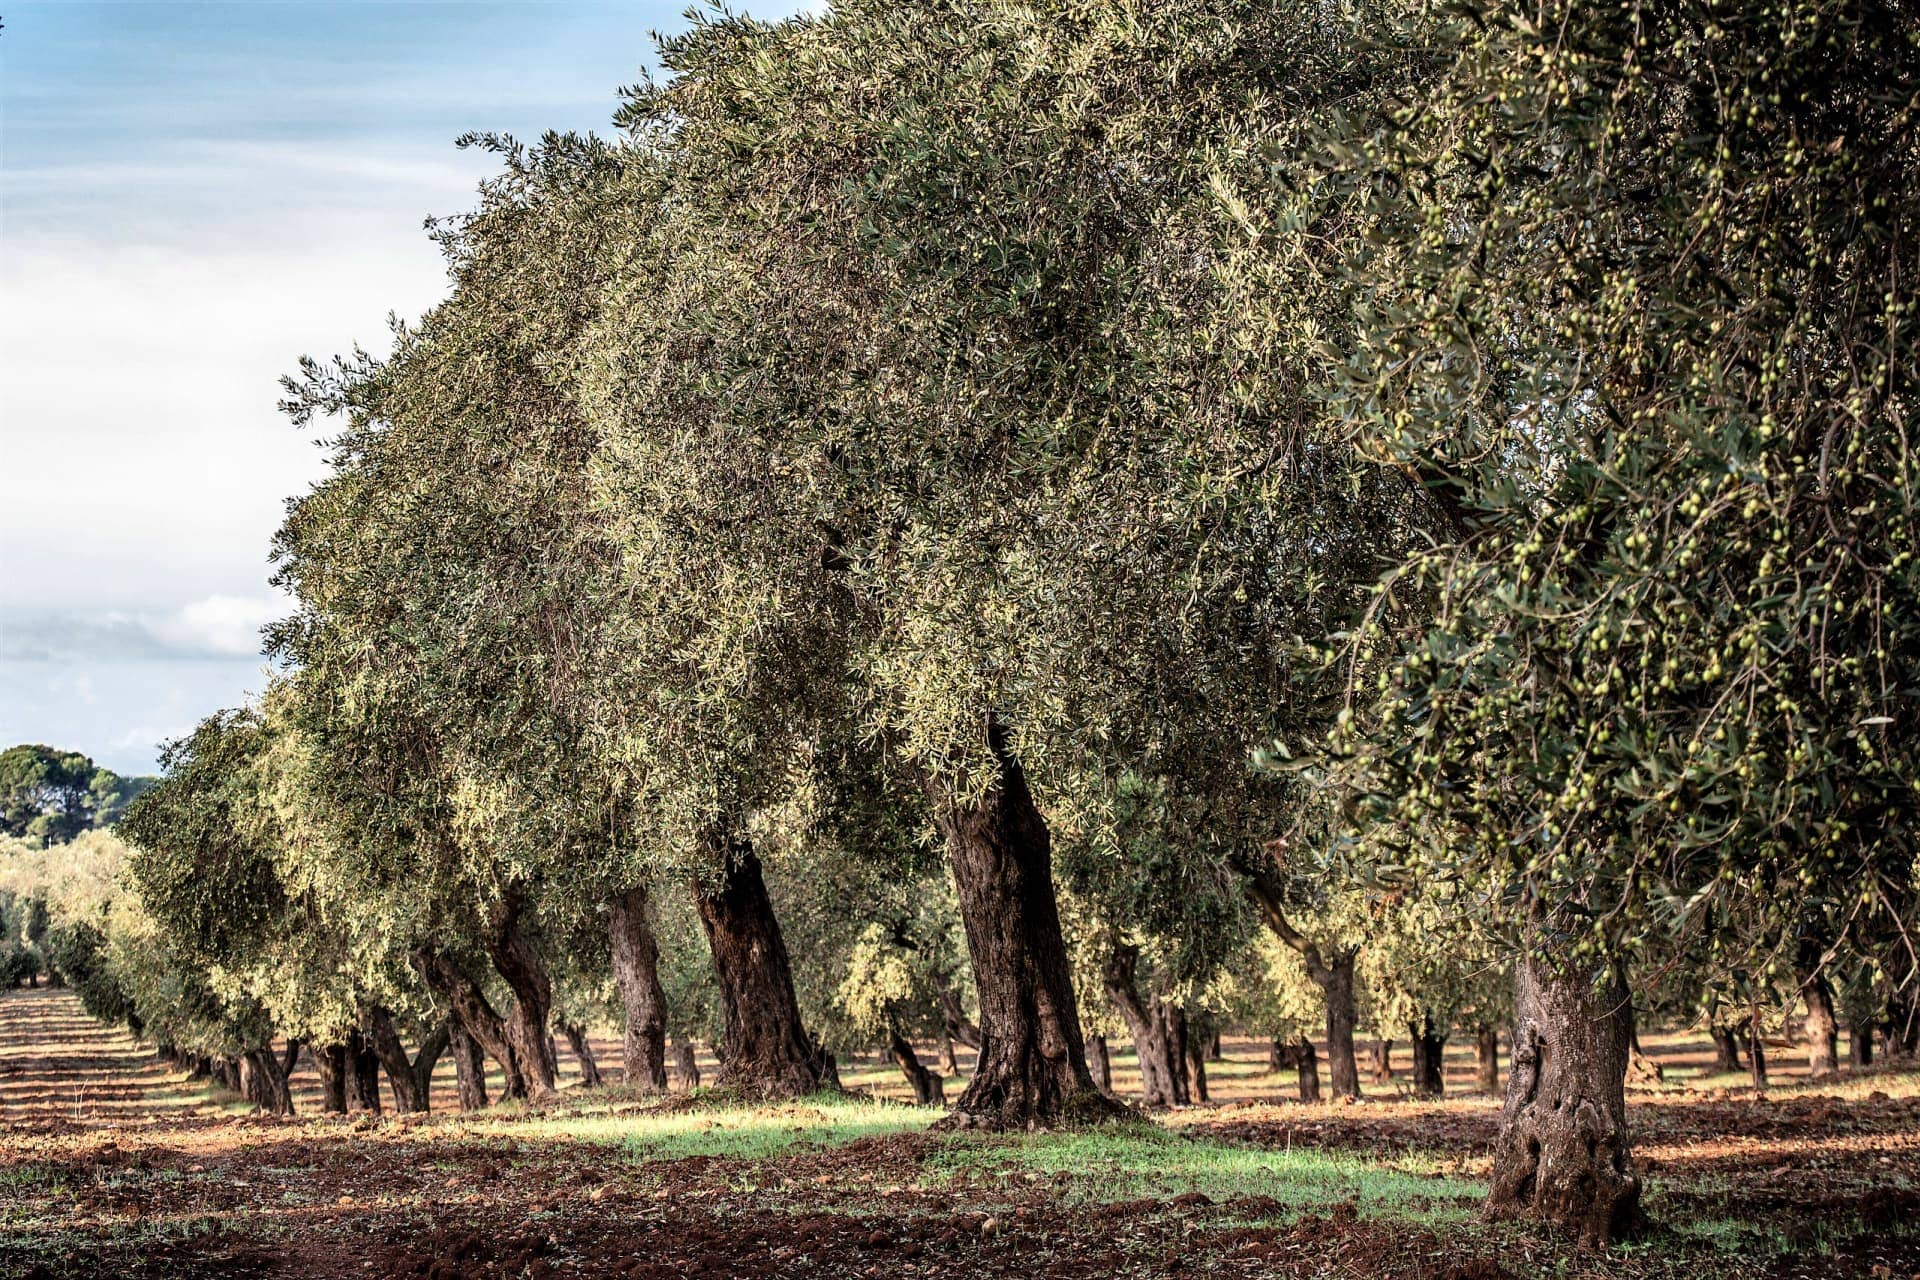 europa-perfiles-la-mejor-producción-de-aceites-de-oliva-productores-detrás-de-san-giuliano-perseguir-la-calidad-a través-de-la-innovación-olive-oil-times